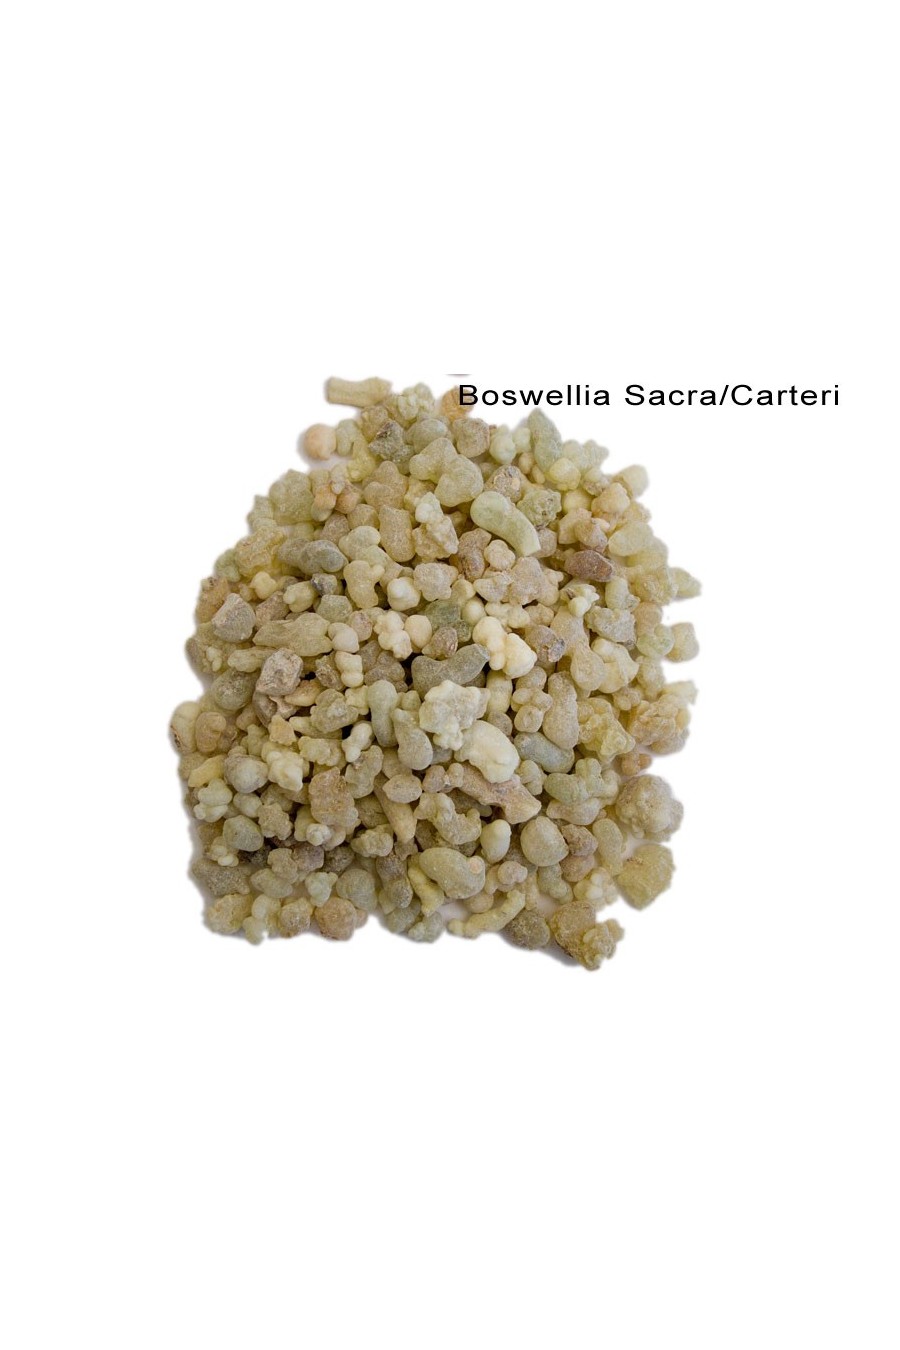 Frankincense (Boswellia sacra/carterii)